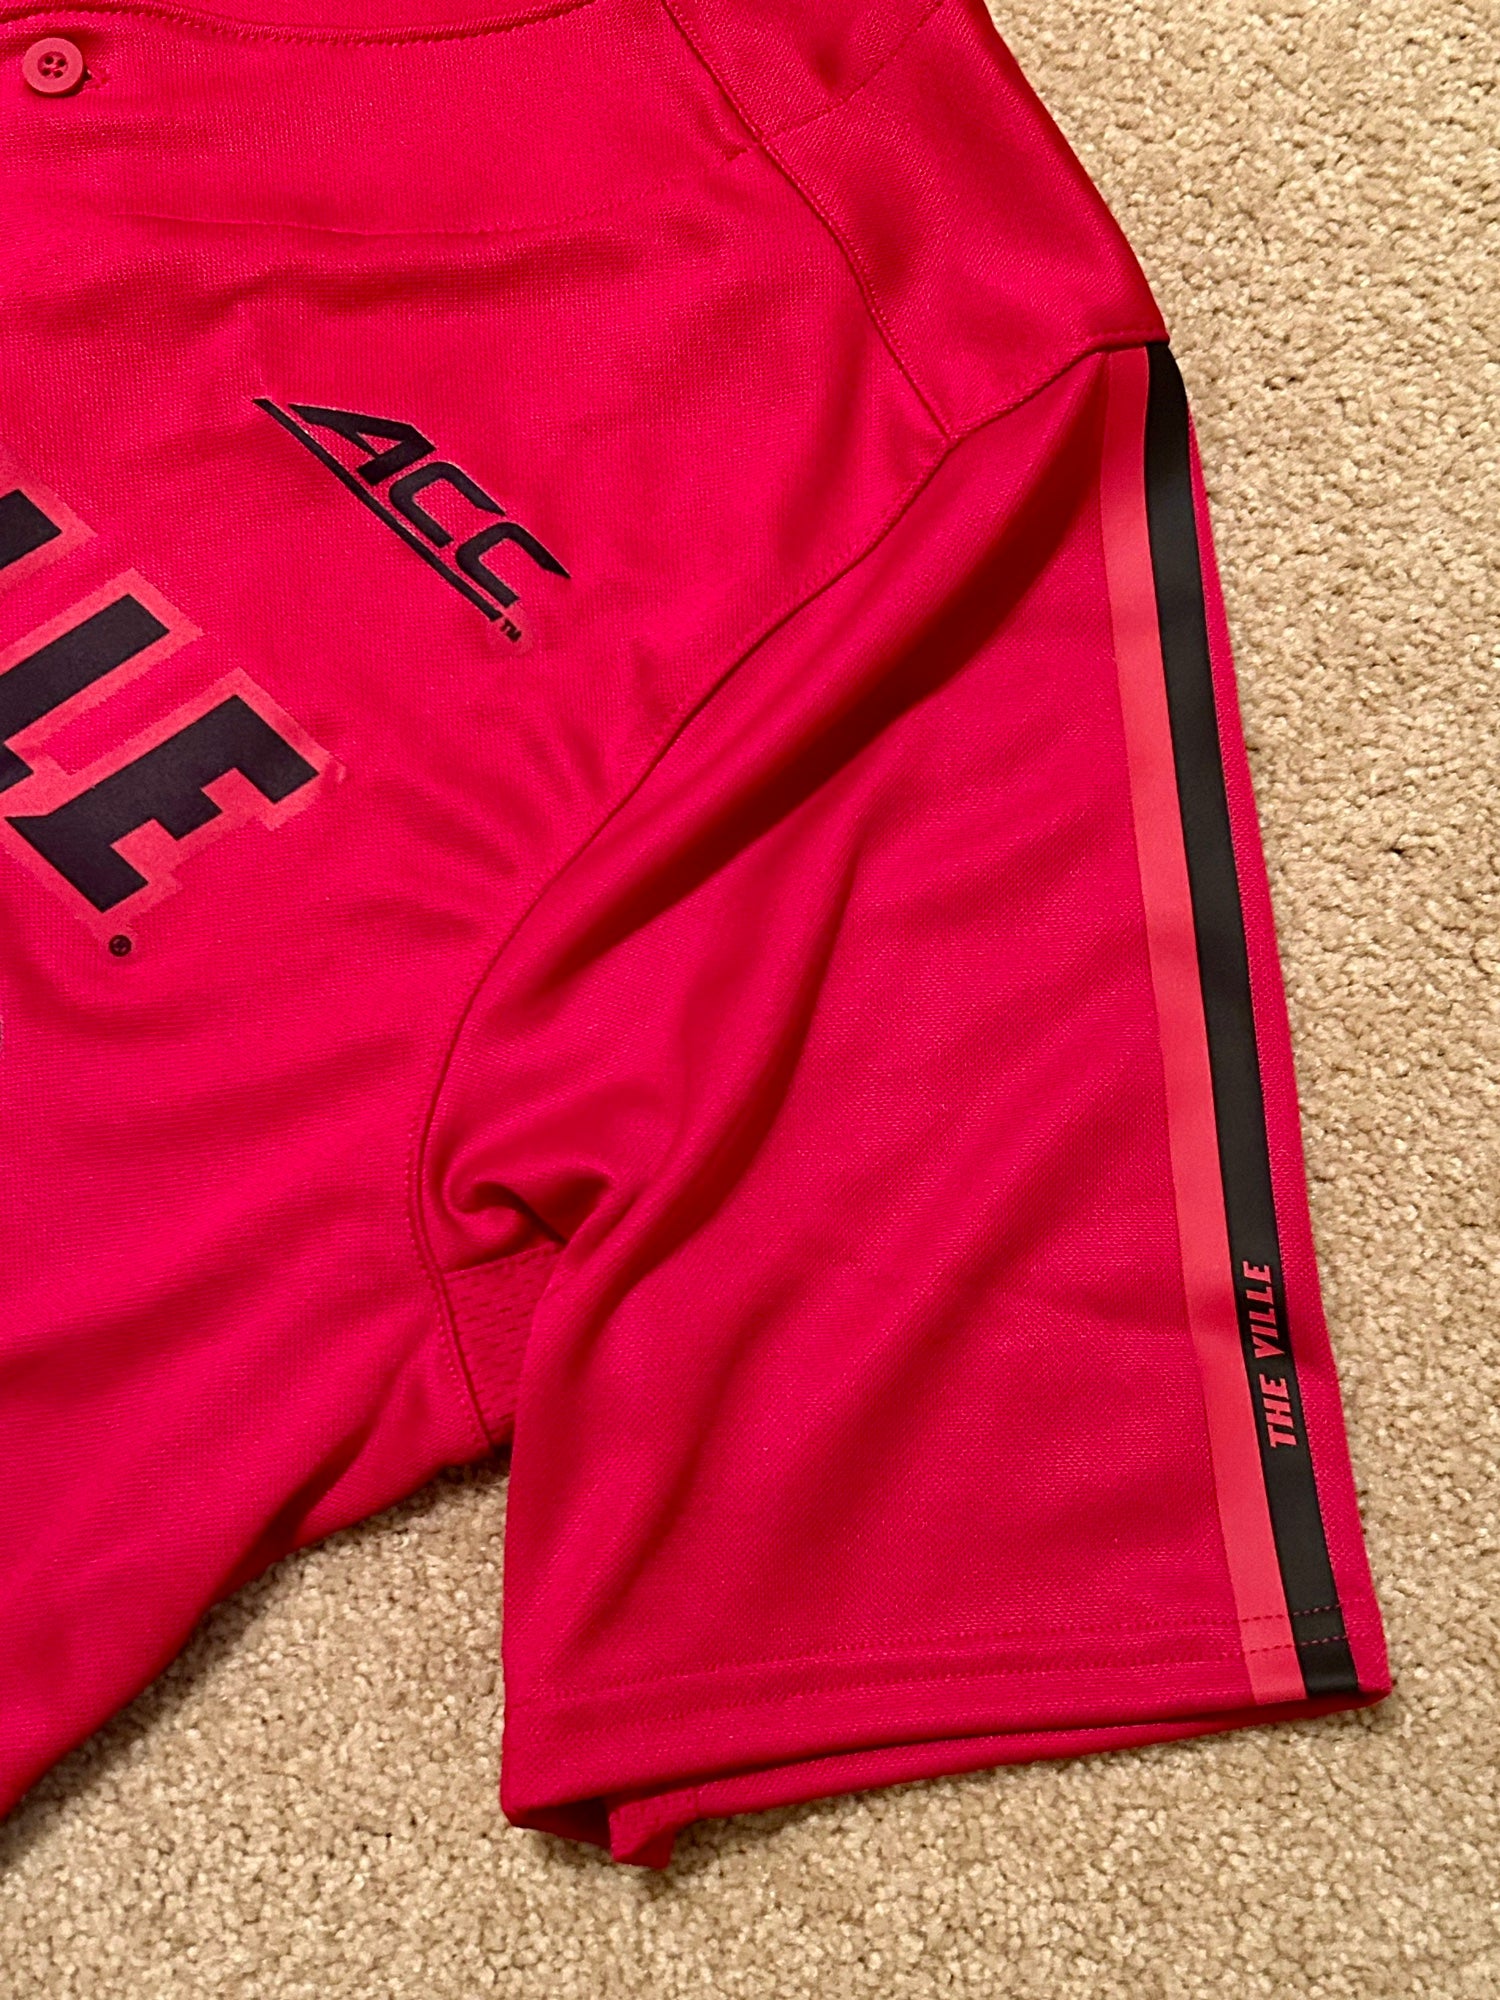 #21 Louisville Cardinals adidas Button-Up Baseball Jersey - Red